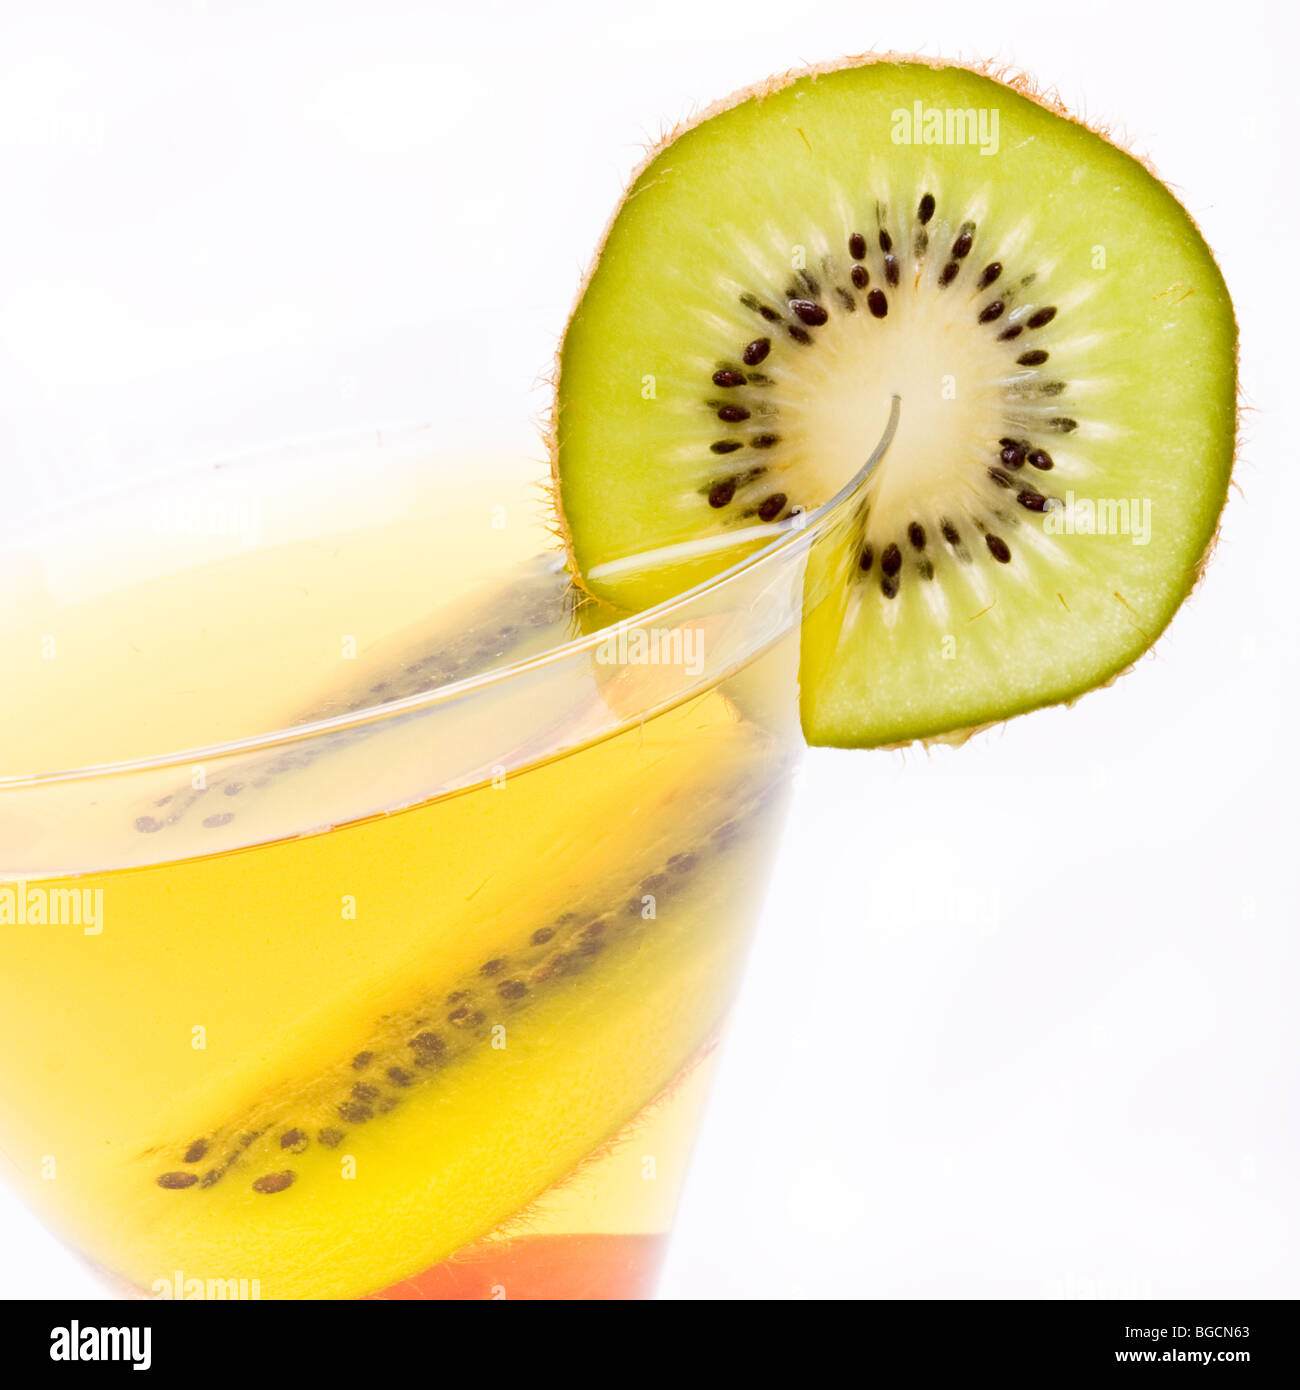 Cocktail di frutta mista di kiwi, ciliegia e succo di limone isolata contro uno sfondo bianco. Foto Stock